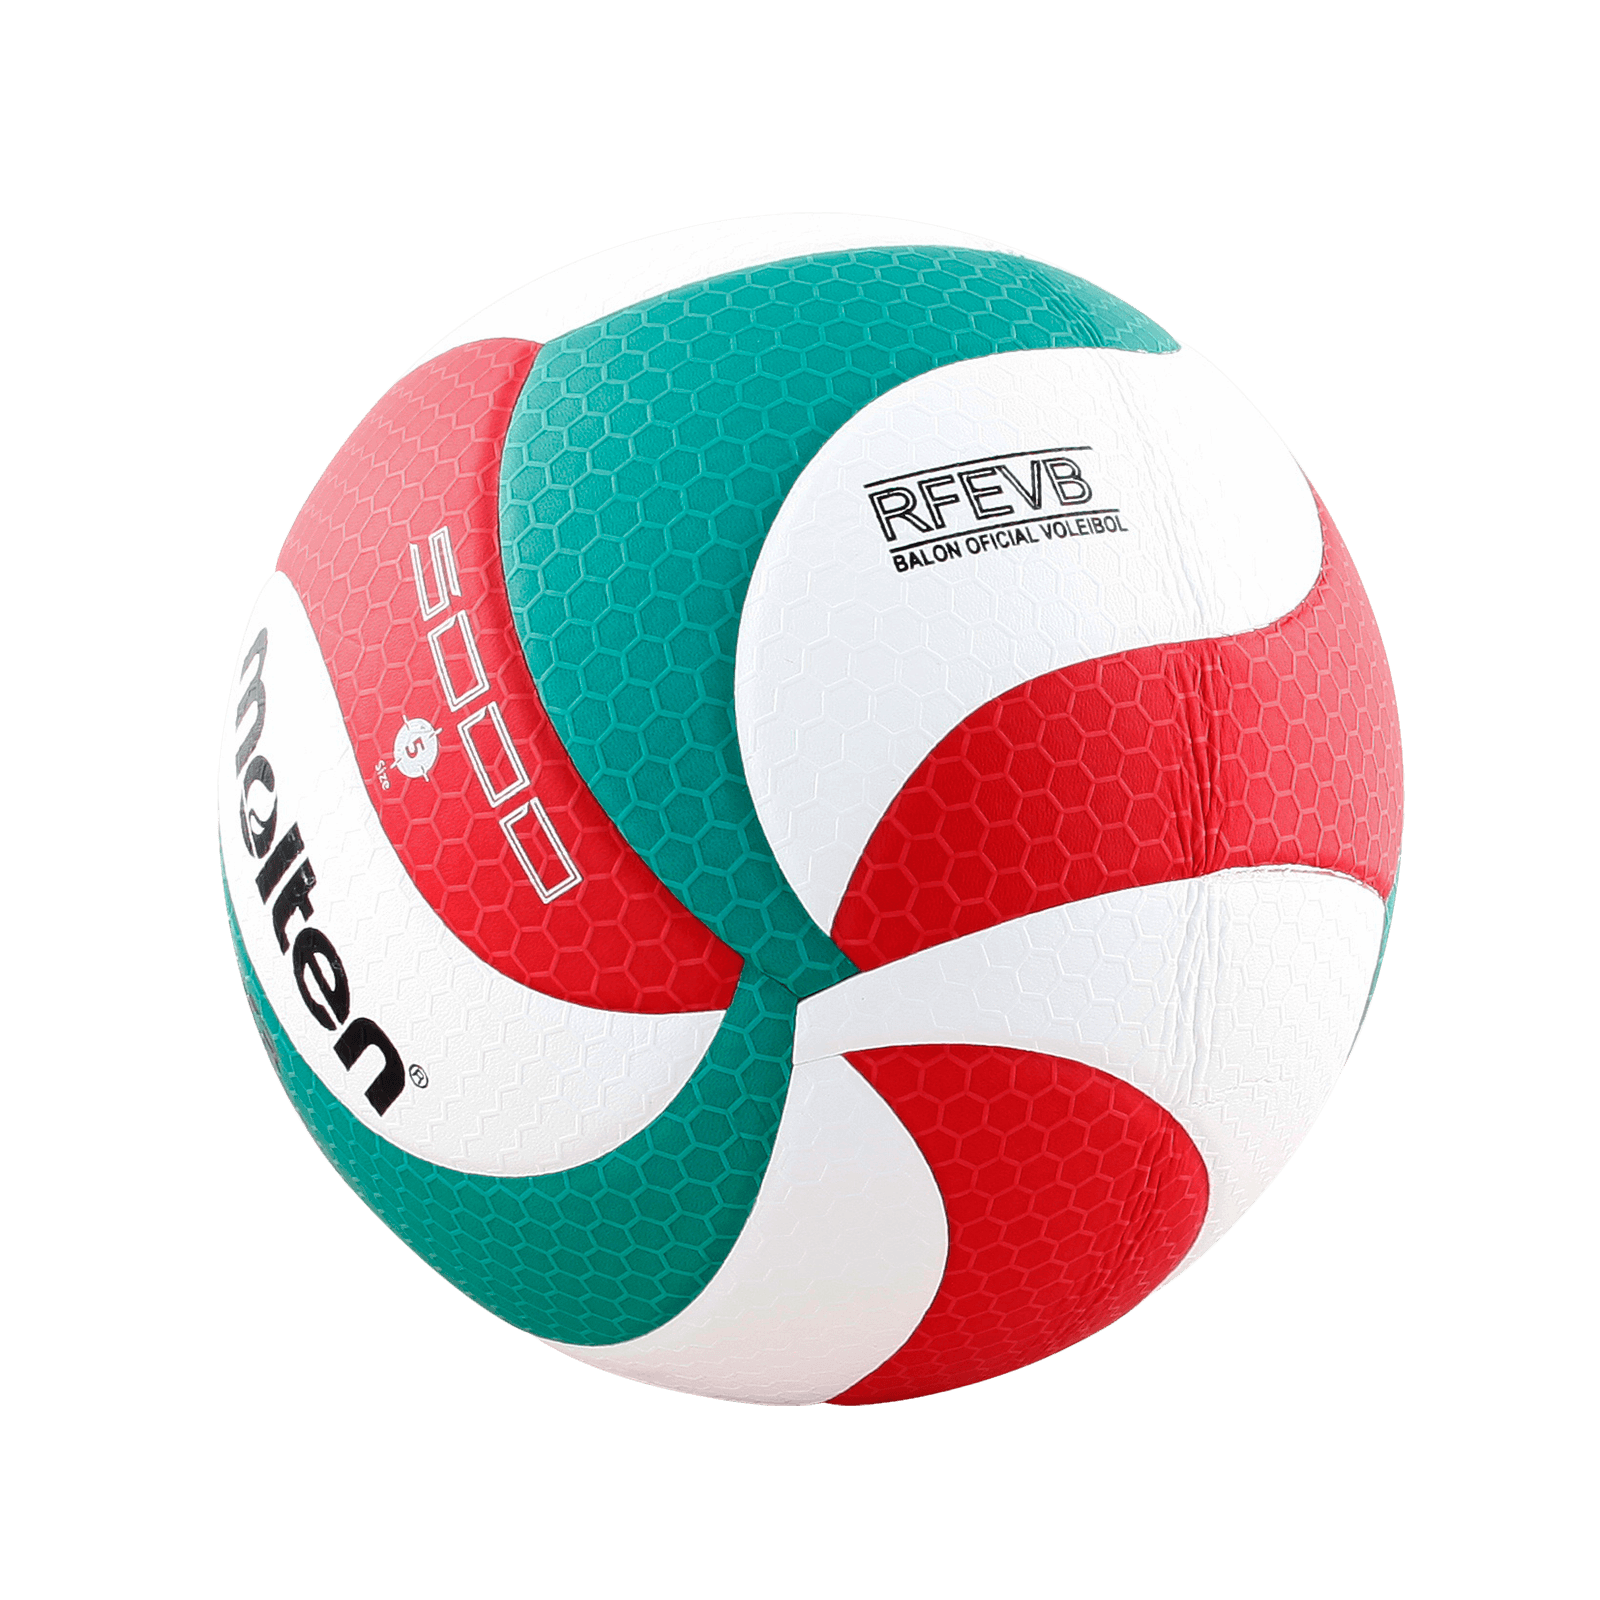 Balon Molten V5m5000 - Balon Molten Voleibol V5m5000  MKP